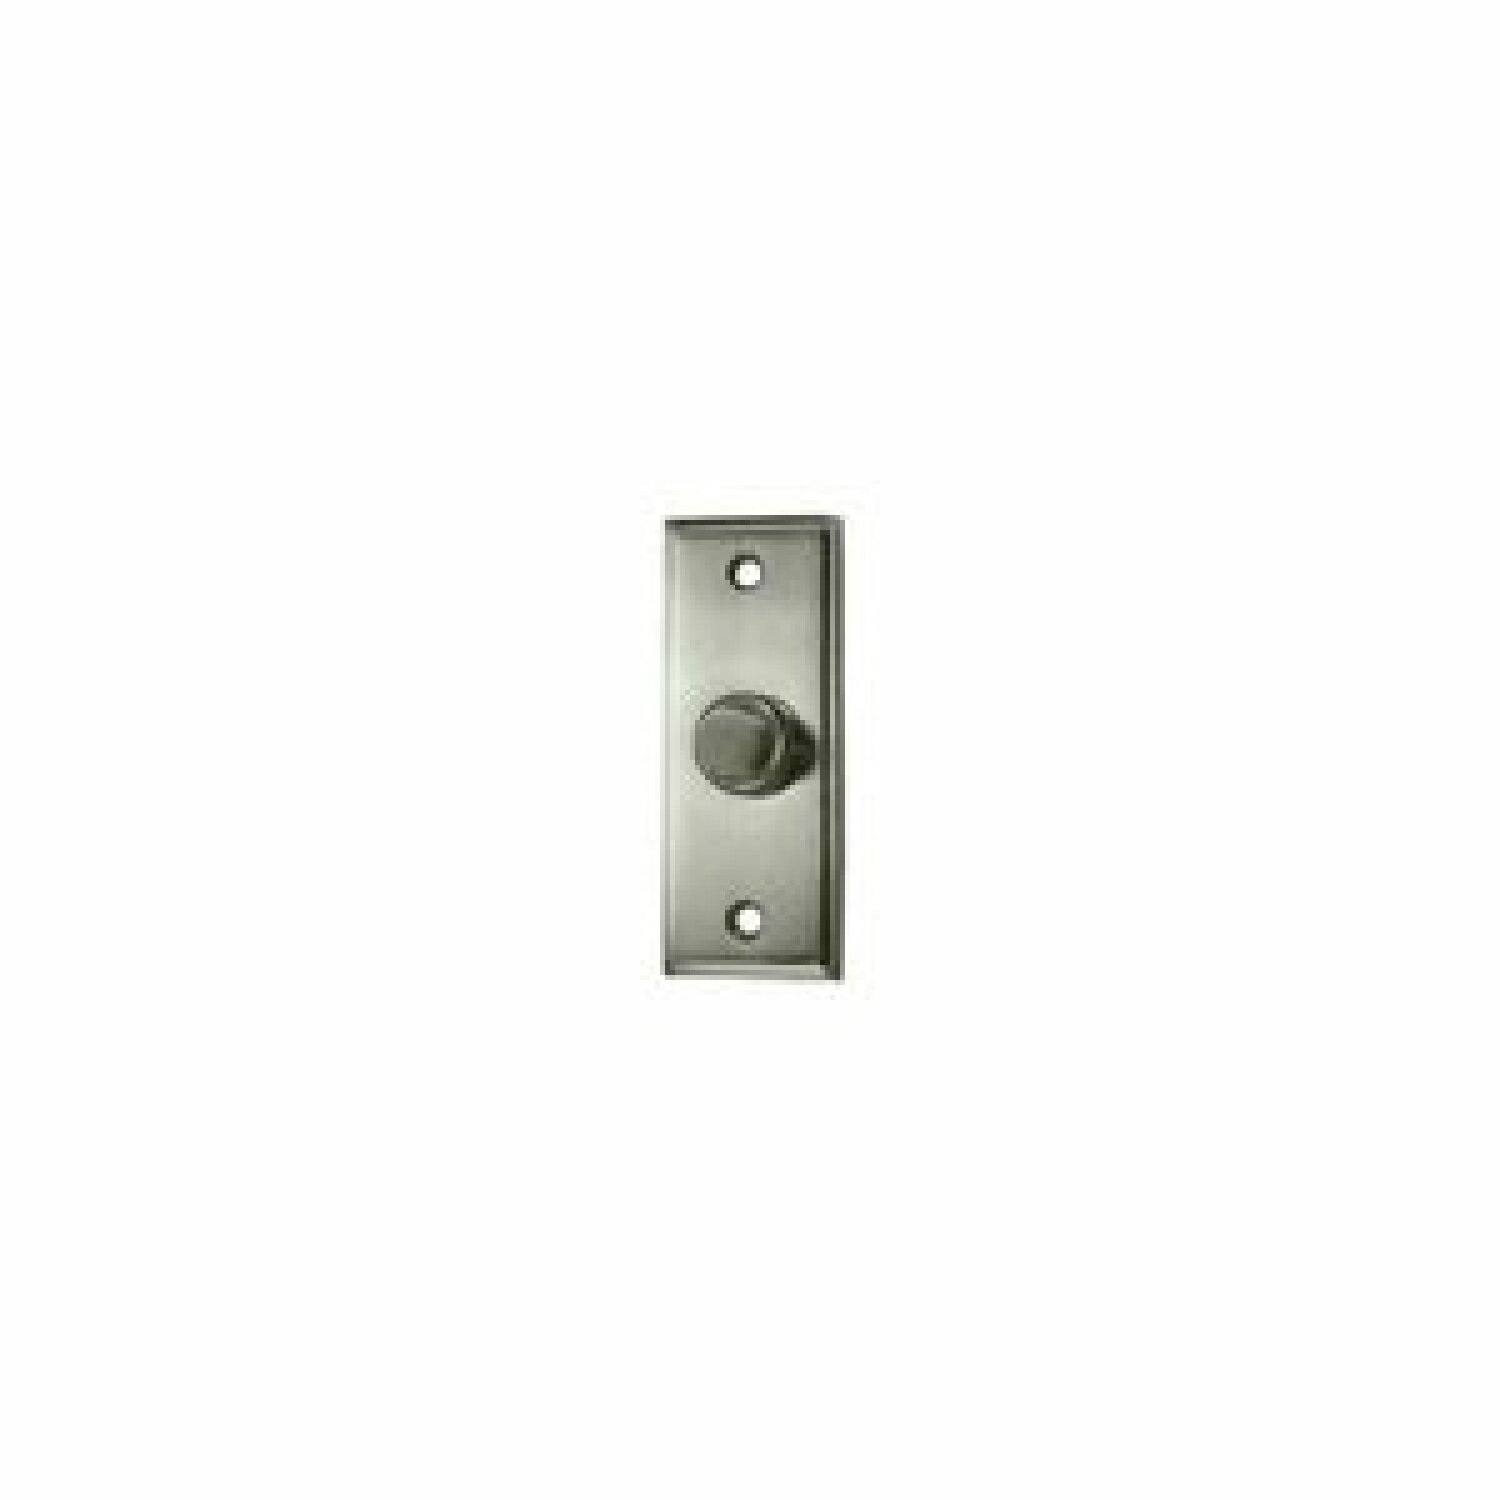 <a href="https://www.moderndigz.com/Deltana doorbell button" target="_blank" rel="noopener nofollow">Deltana doorbell button</a>